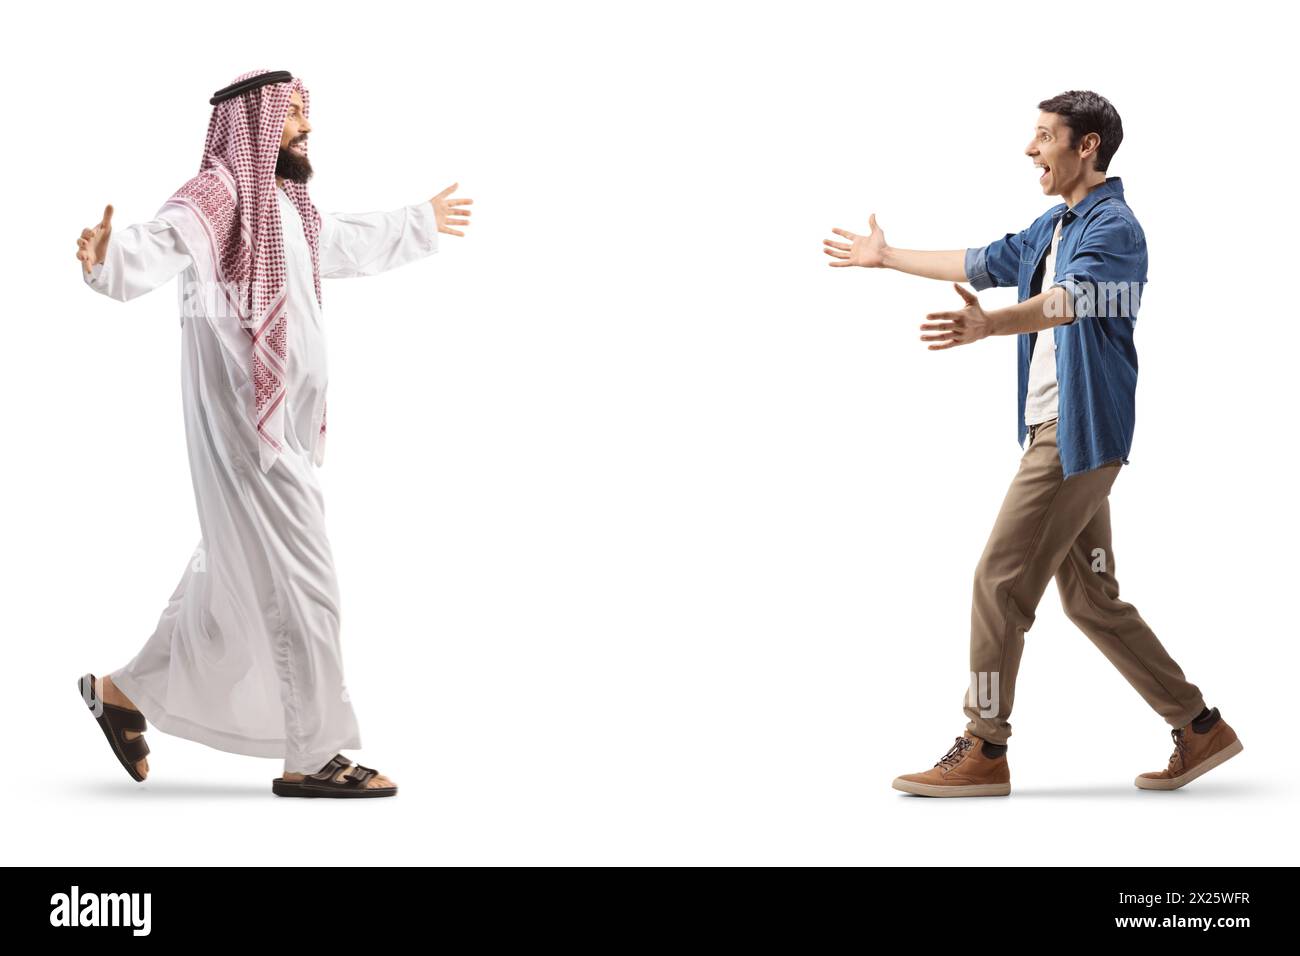 Uomo arabo saudita in abiti islamici che incontra e saluta un giovane casual isolato su sfondo bianco Foto Stock